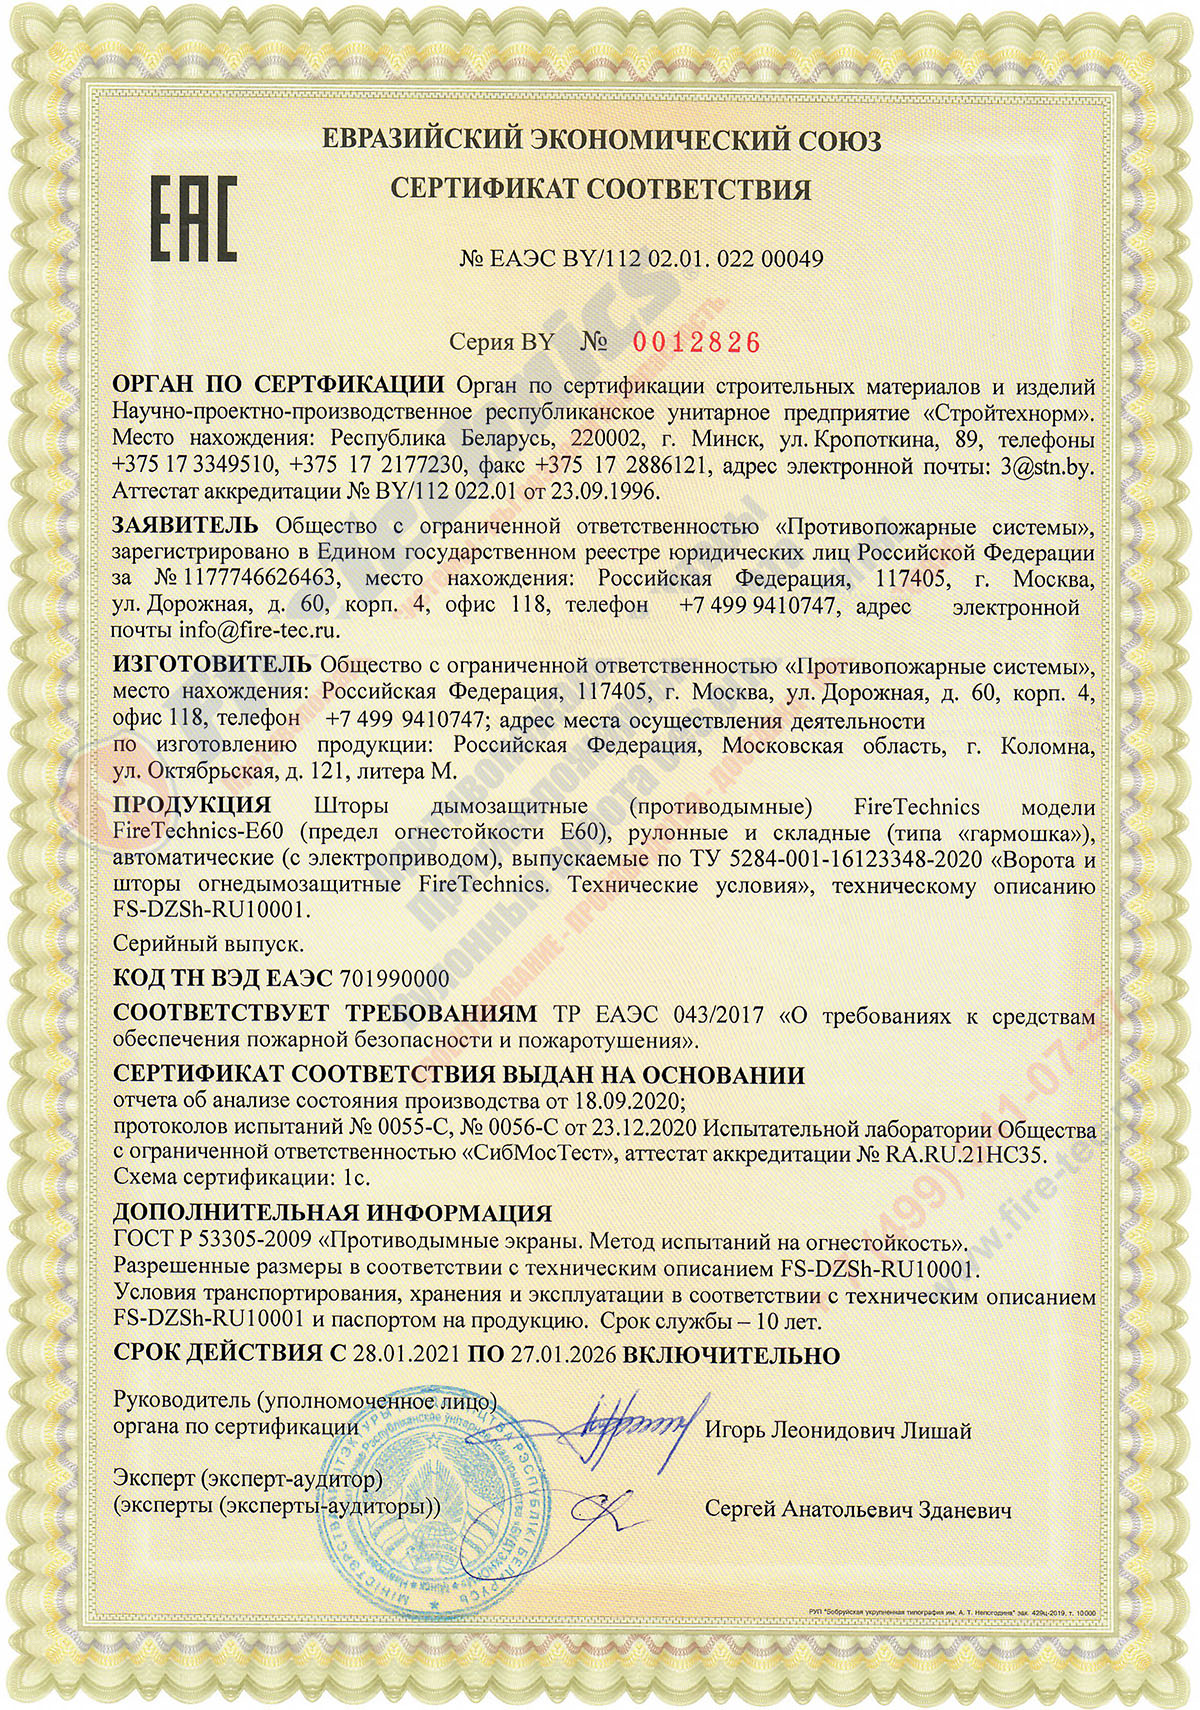 Сертификат соответствия на Шторы FireTechnics модели FireTechnics-EI180 противопожарные